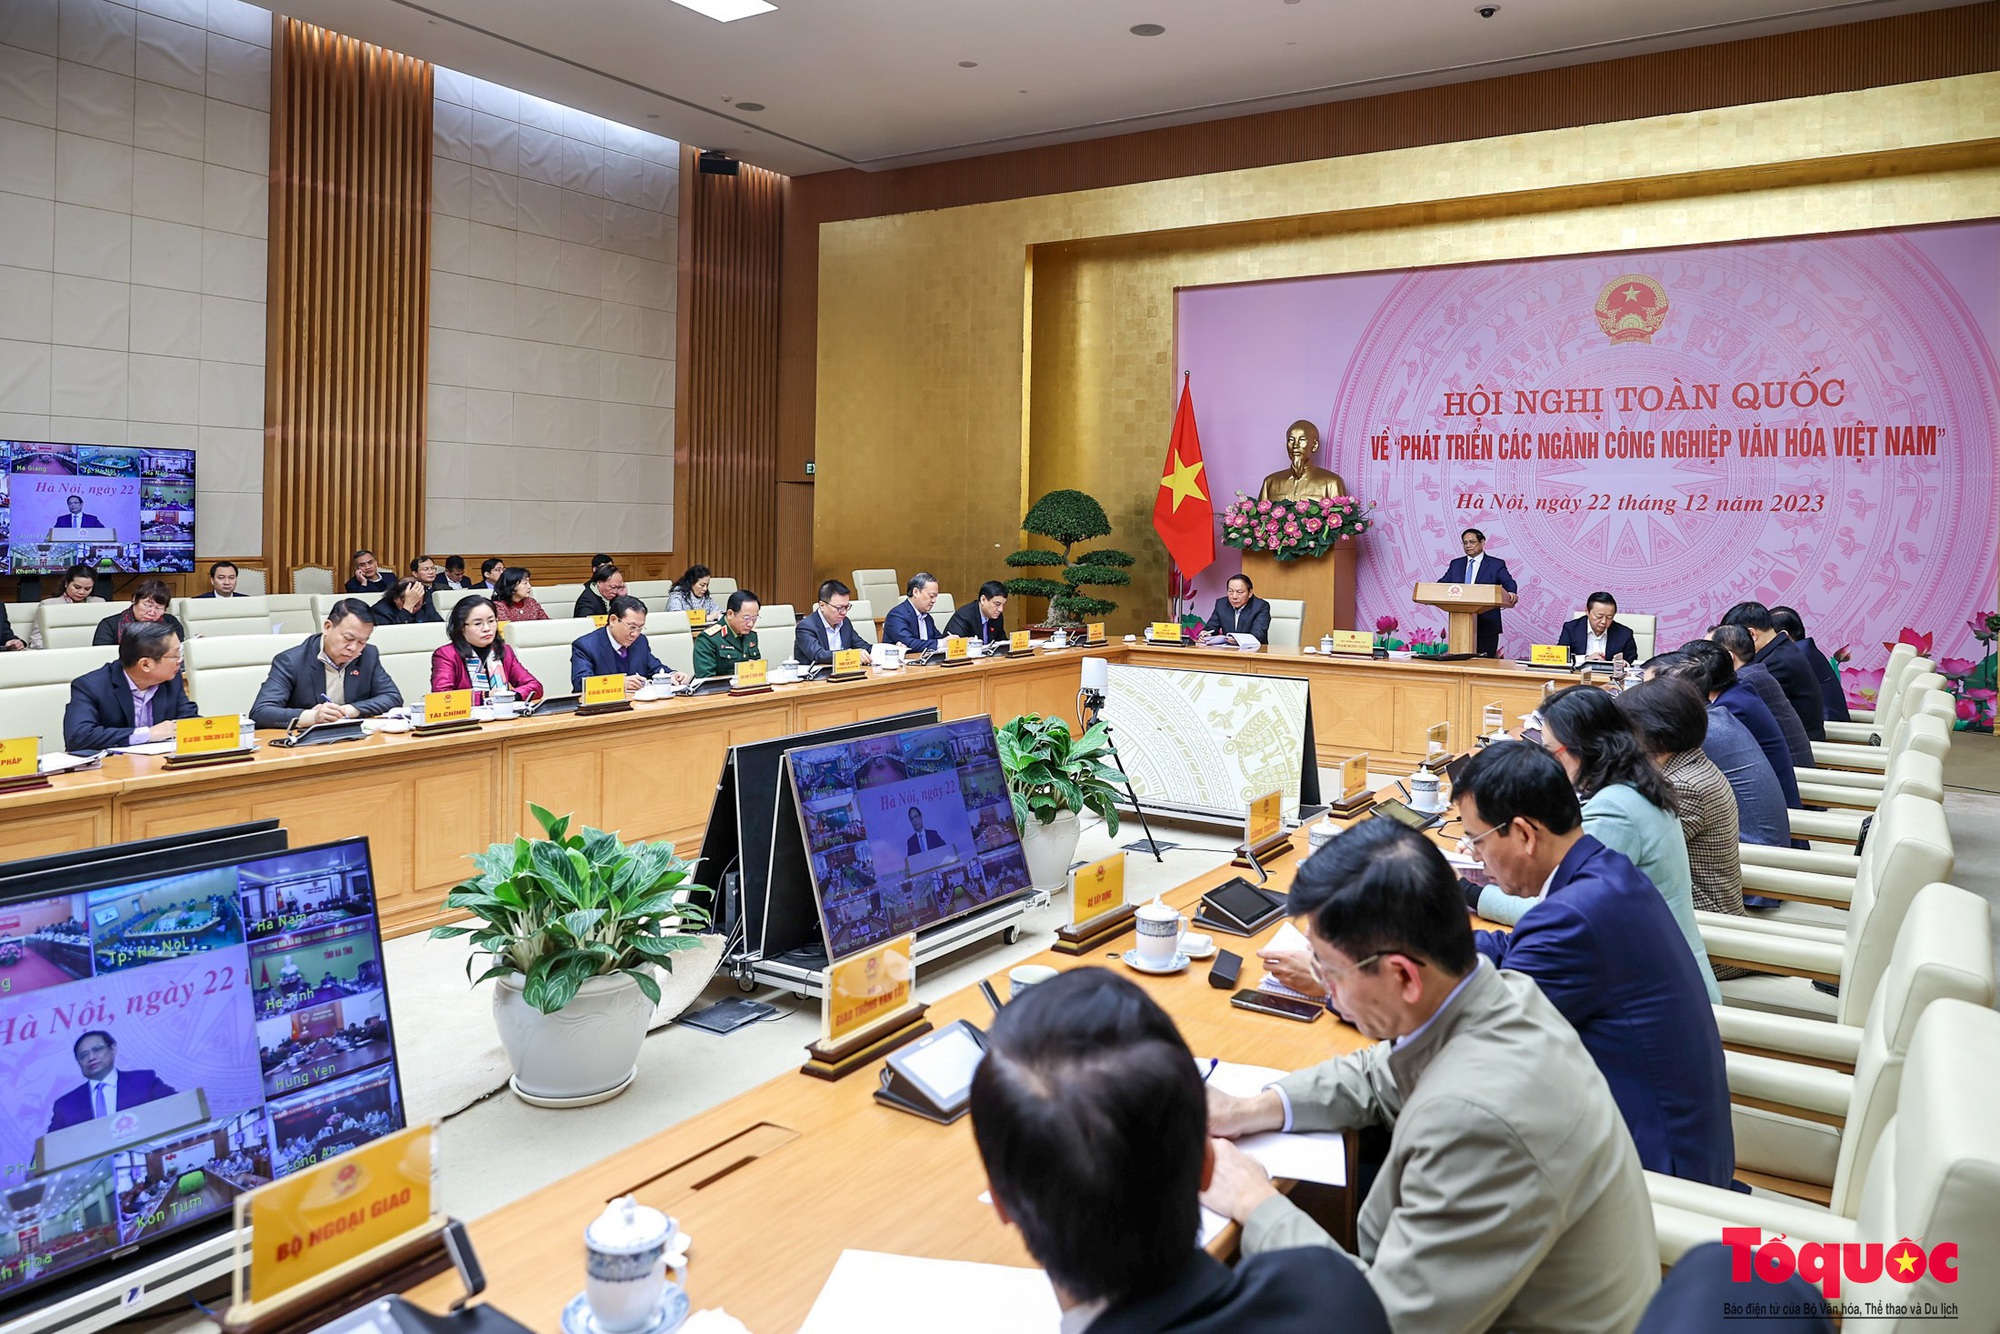 Chùm ảnh: Hội nghị toàn quốc về phát triển các ngành công nghiệp văn hóa Việt Nam - Ảnh 9.